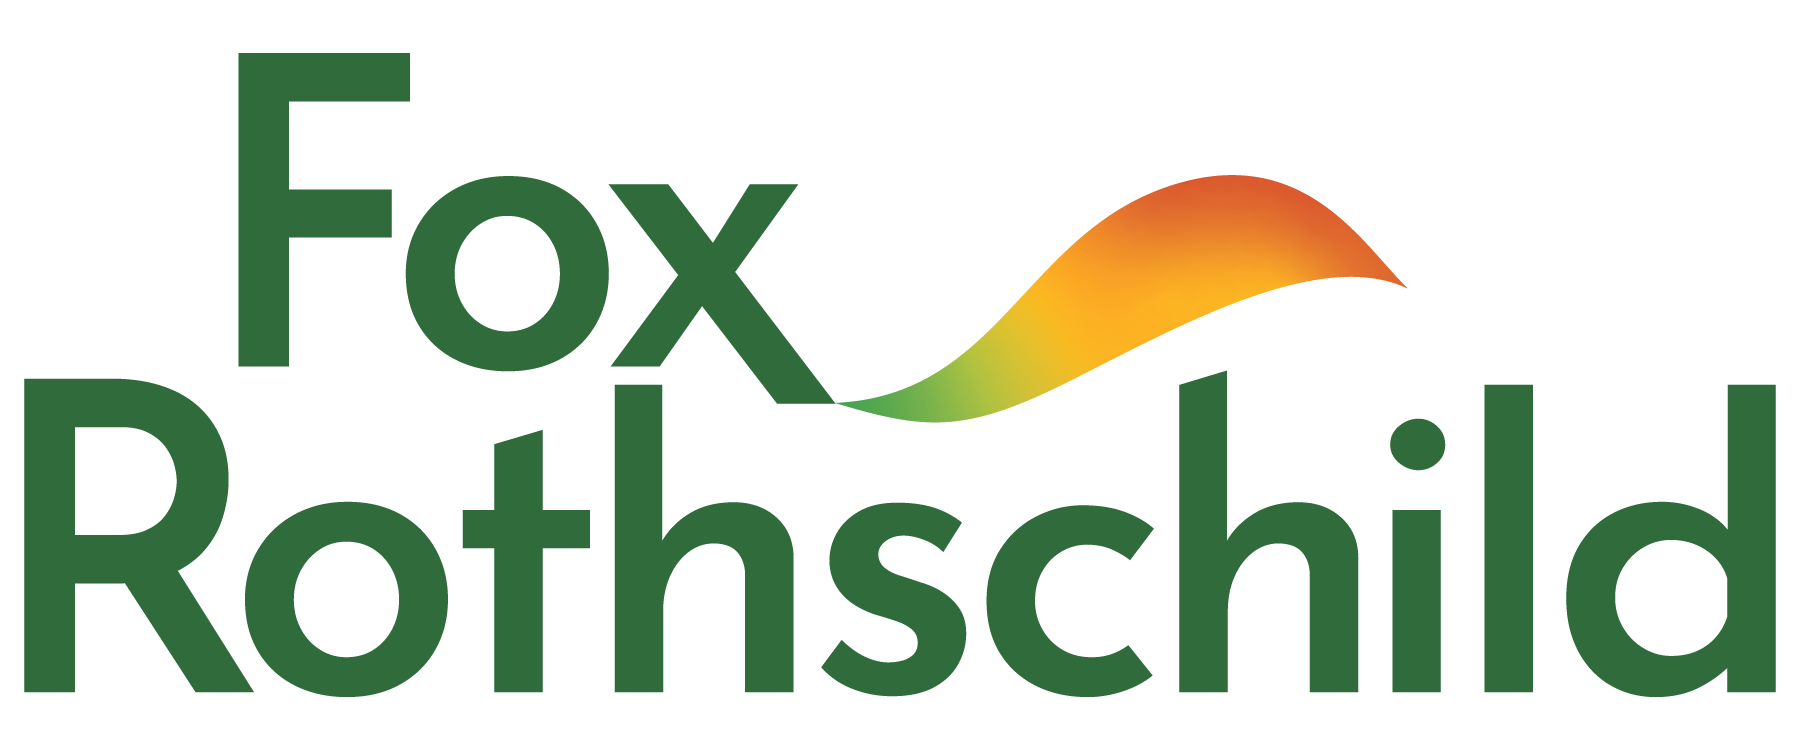 Fox Rothschild